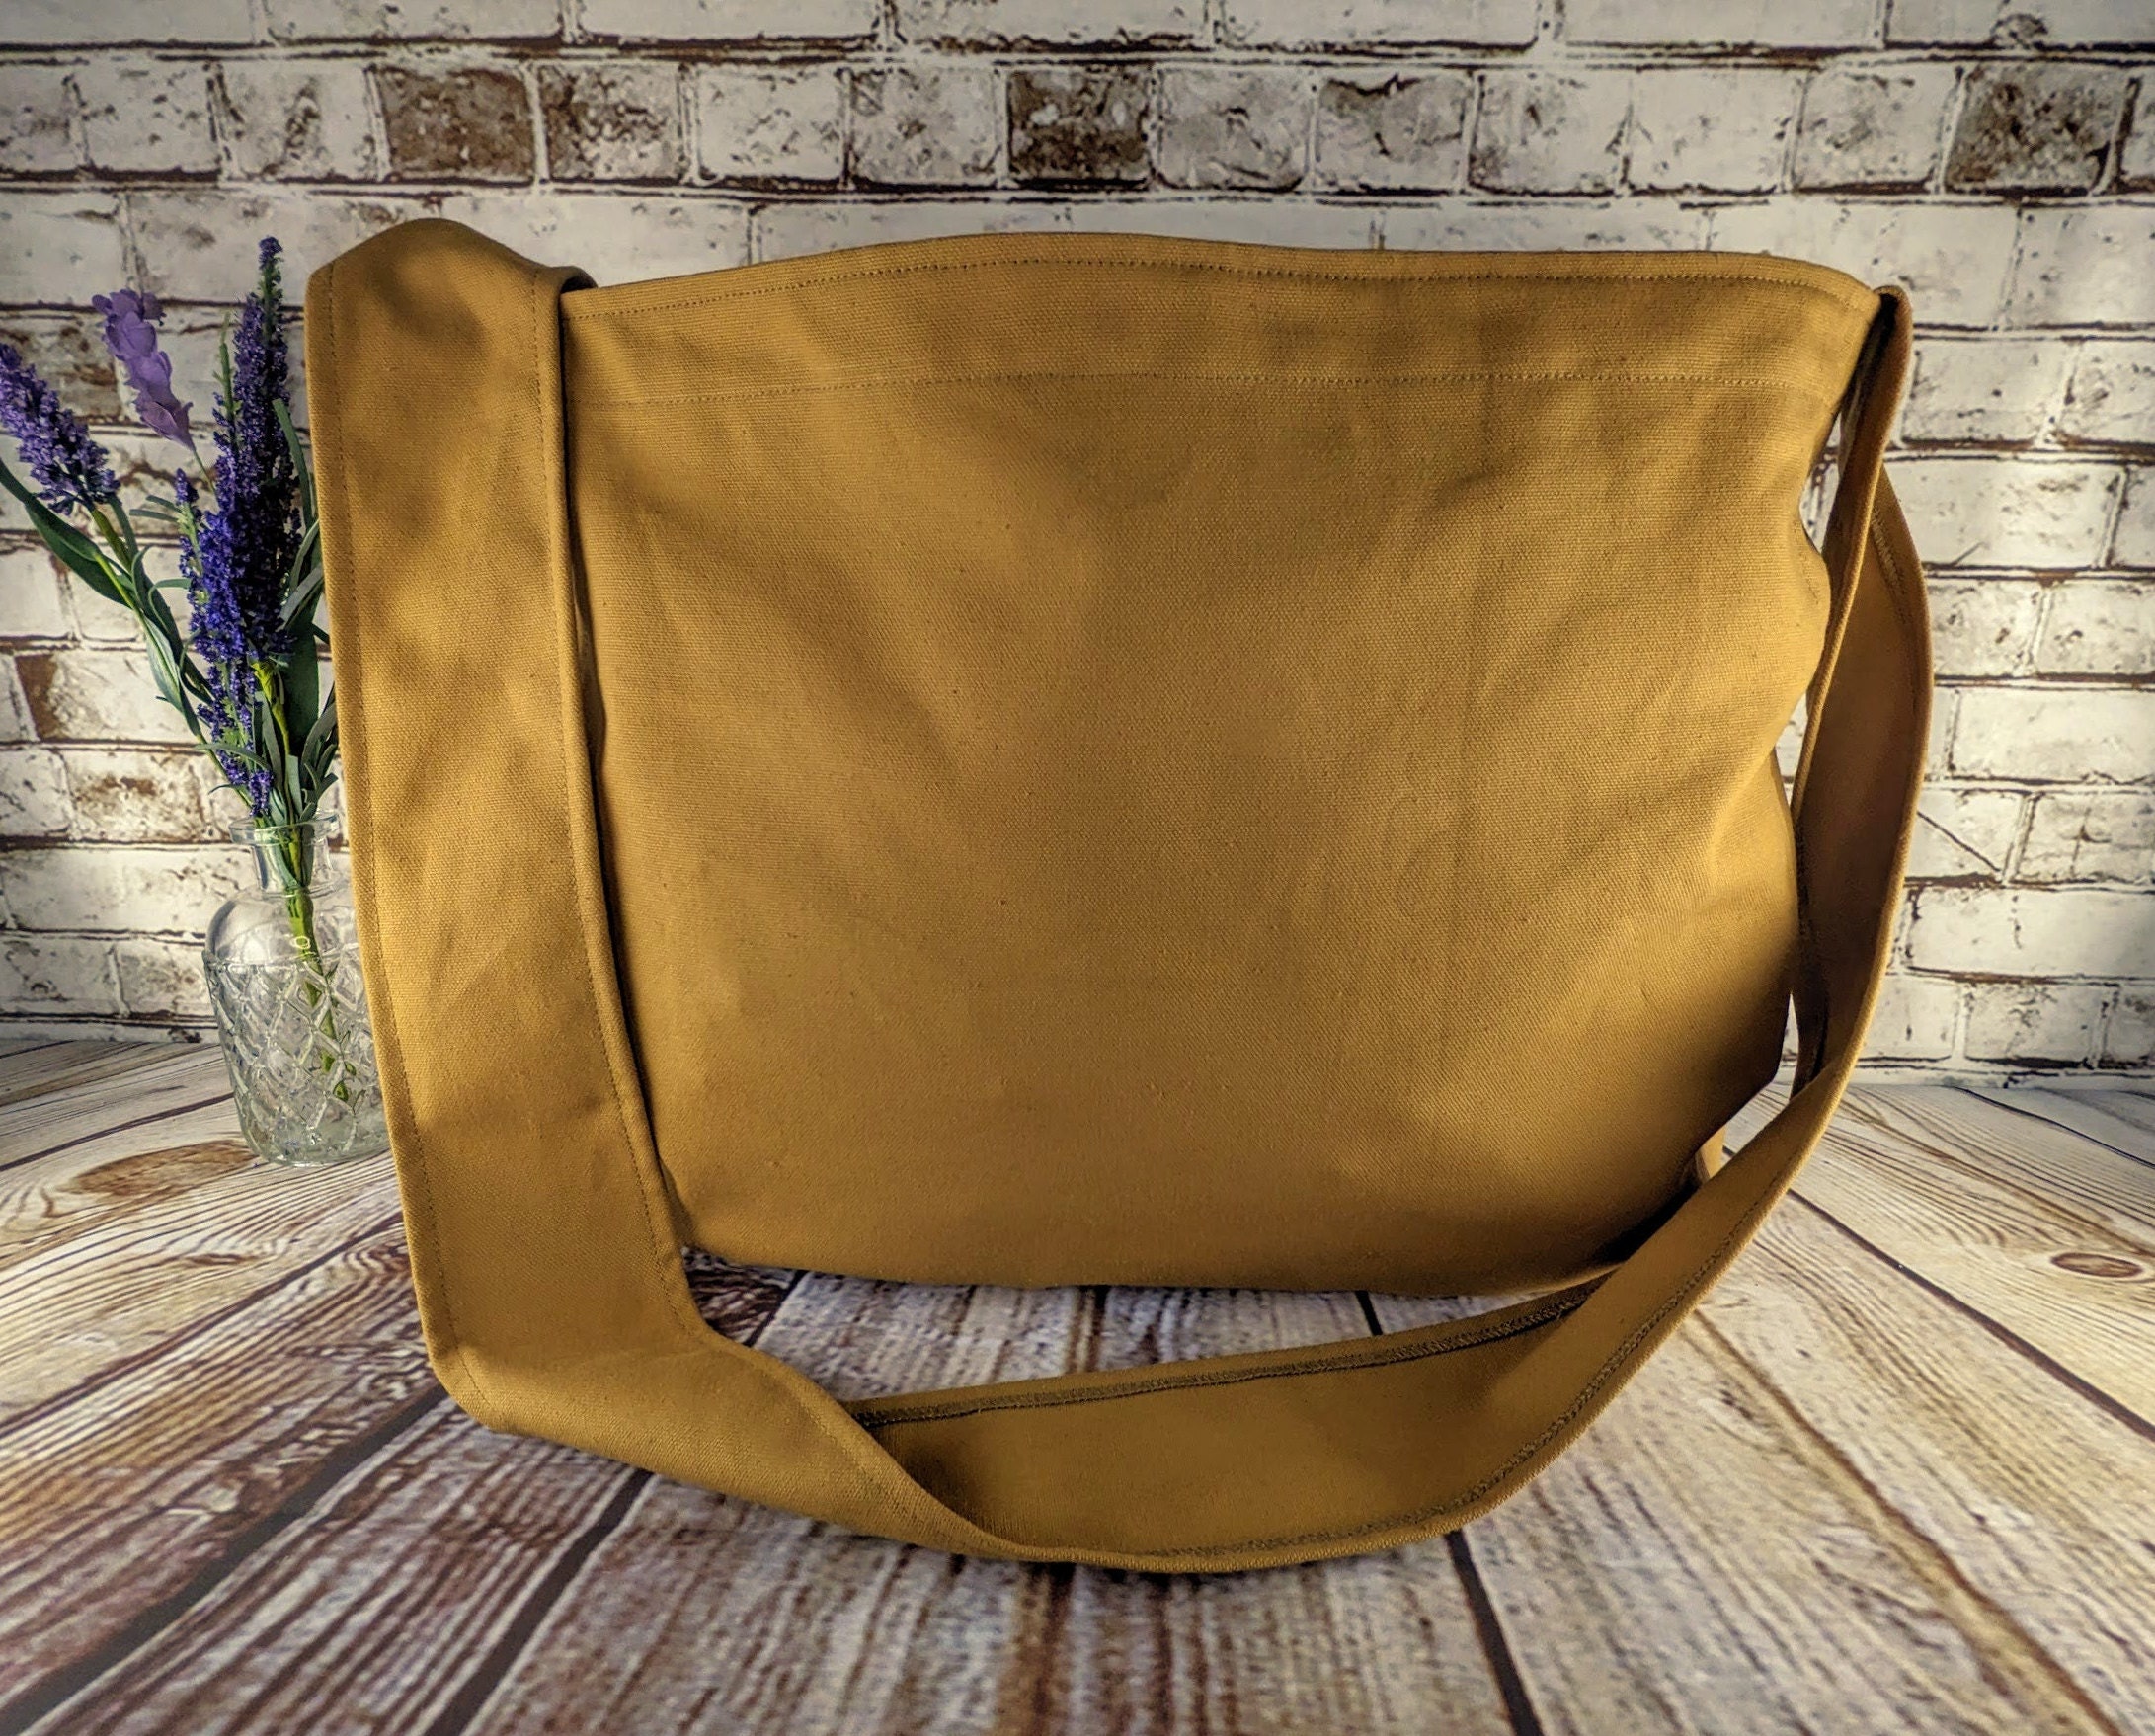 Golden Beige Canvas Newspaper Bag Rectangular Mail Bag or 